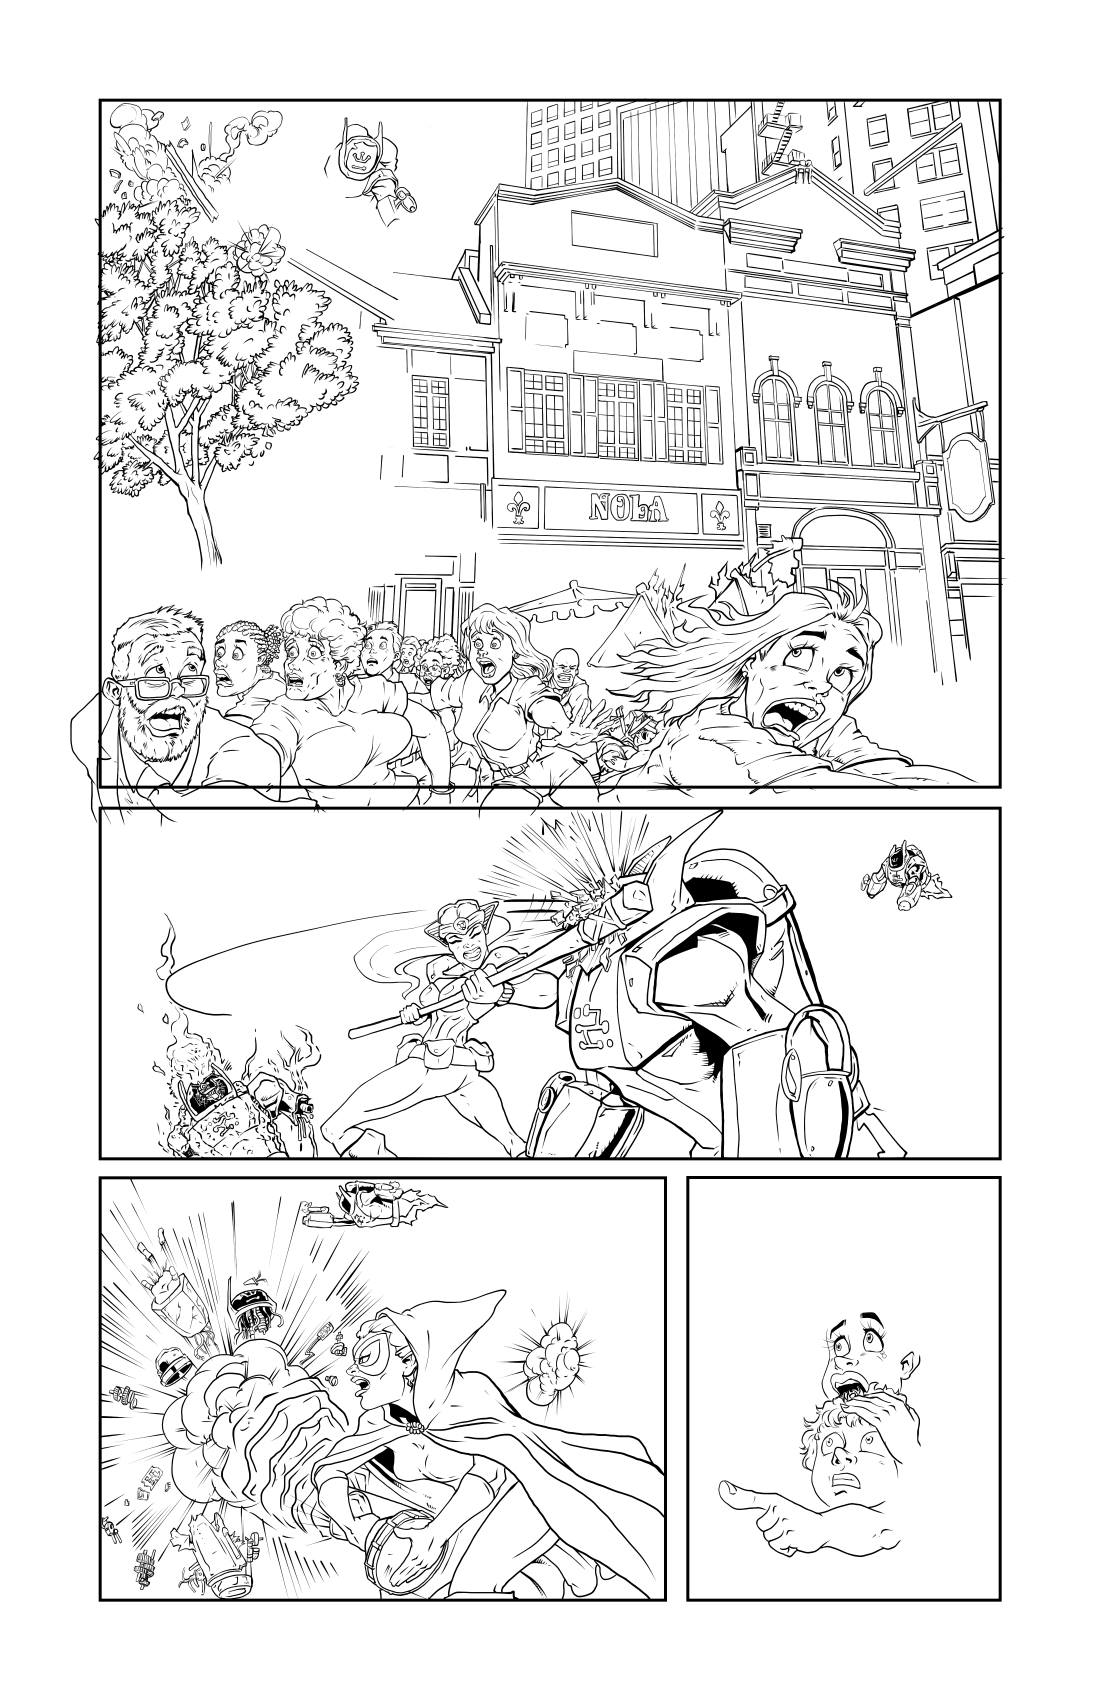 page 13 (story 2) in progress.jpg